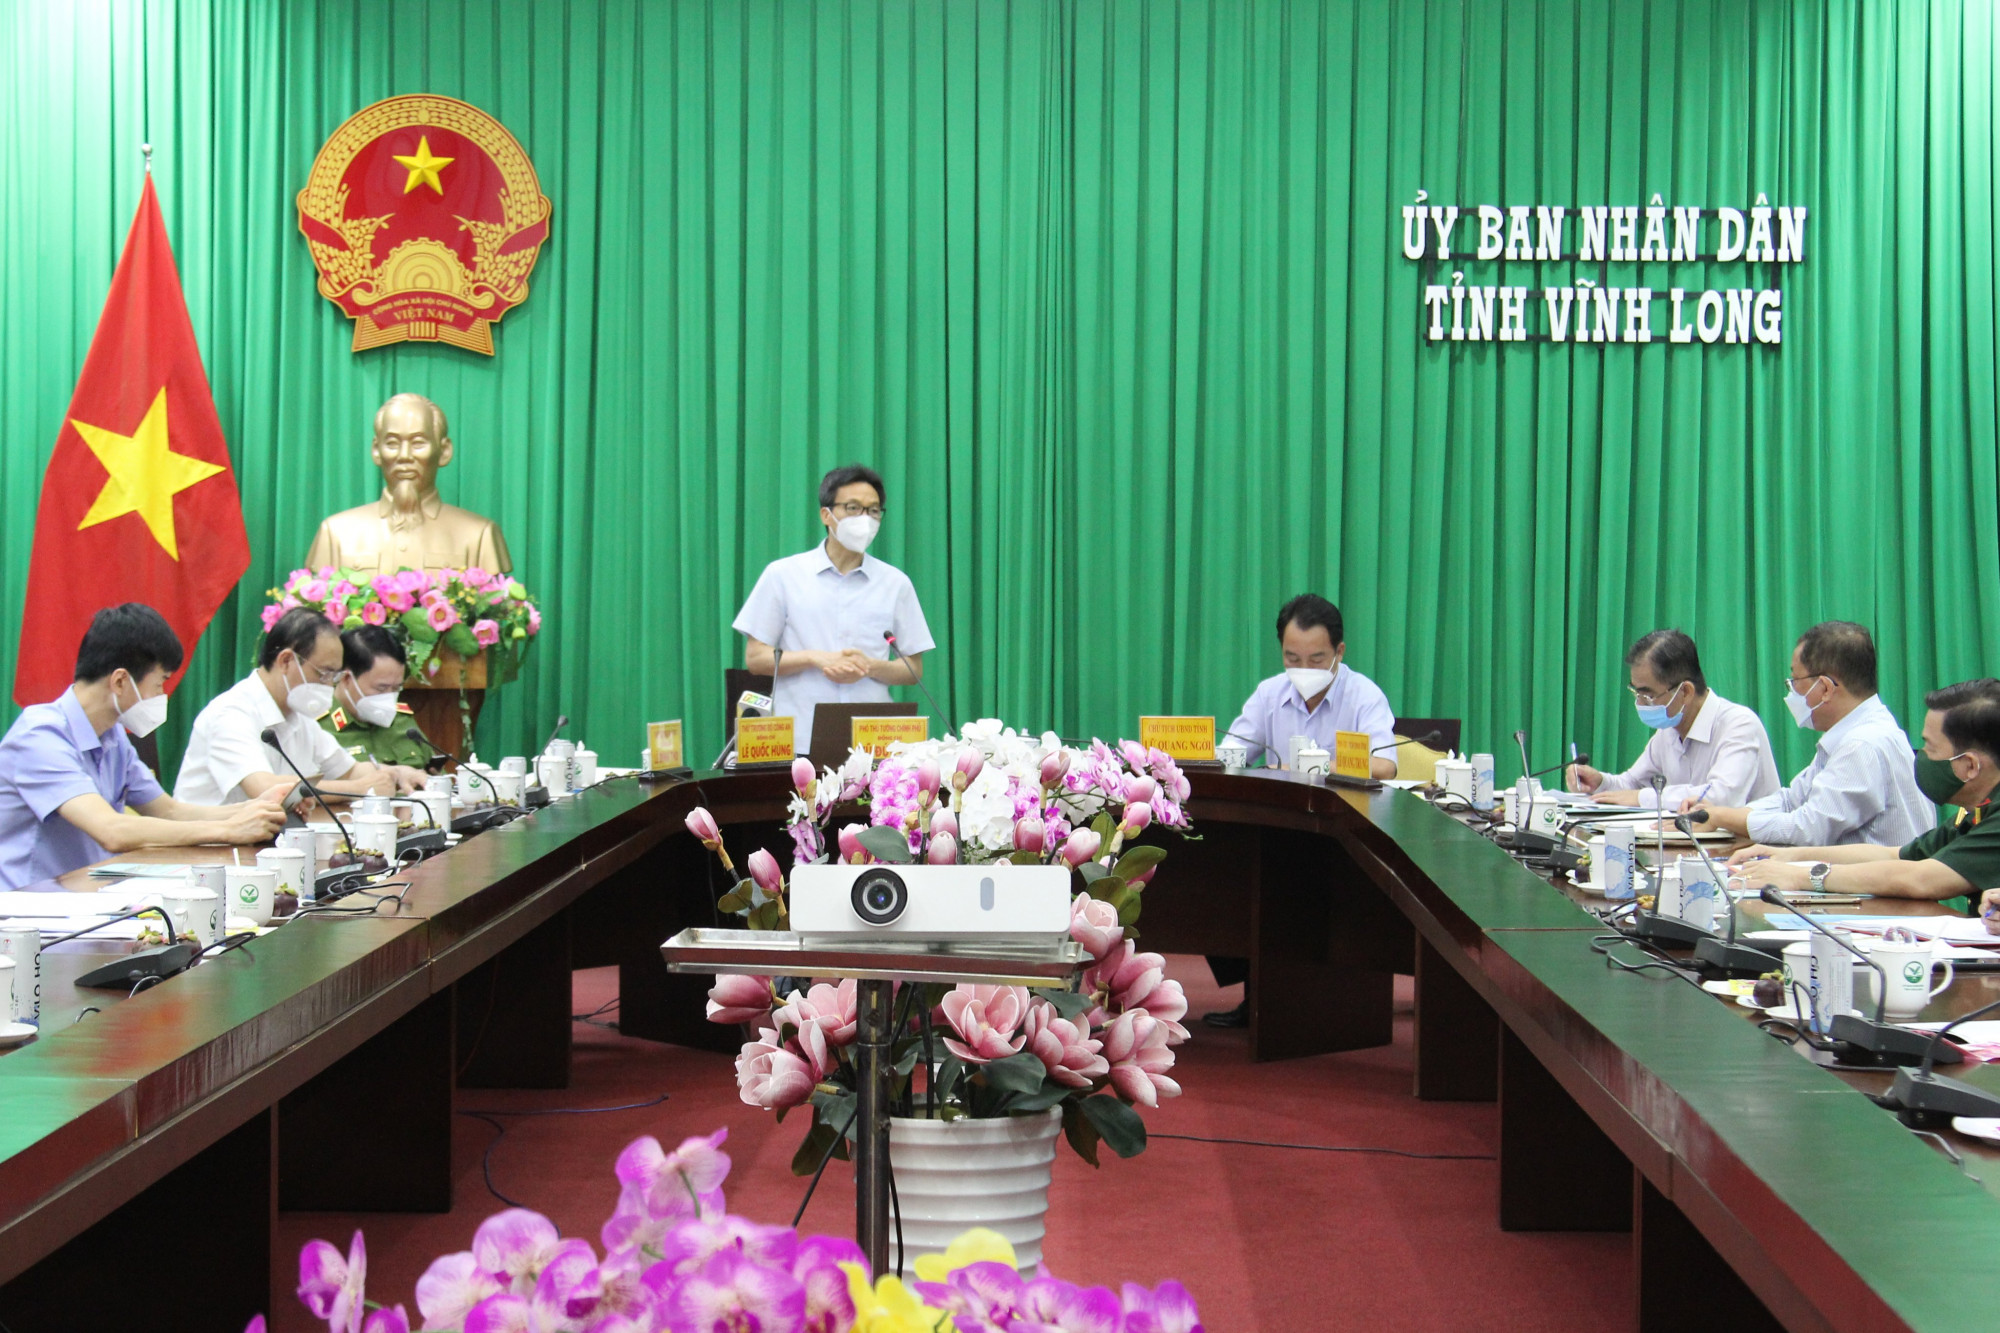 Phó thủ tướng Vũ Đức Đam cùng đoàn công tác đã đến làm việc tại các tỉnh Bến Tre, Tiền Giang và Vĩnh Long chiều 21/7